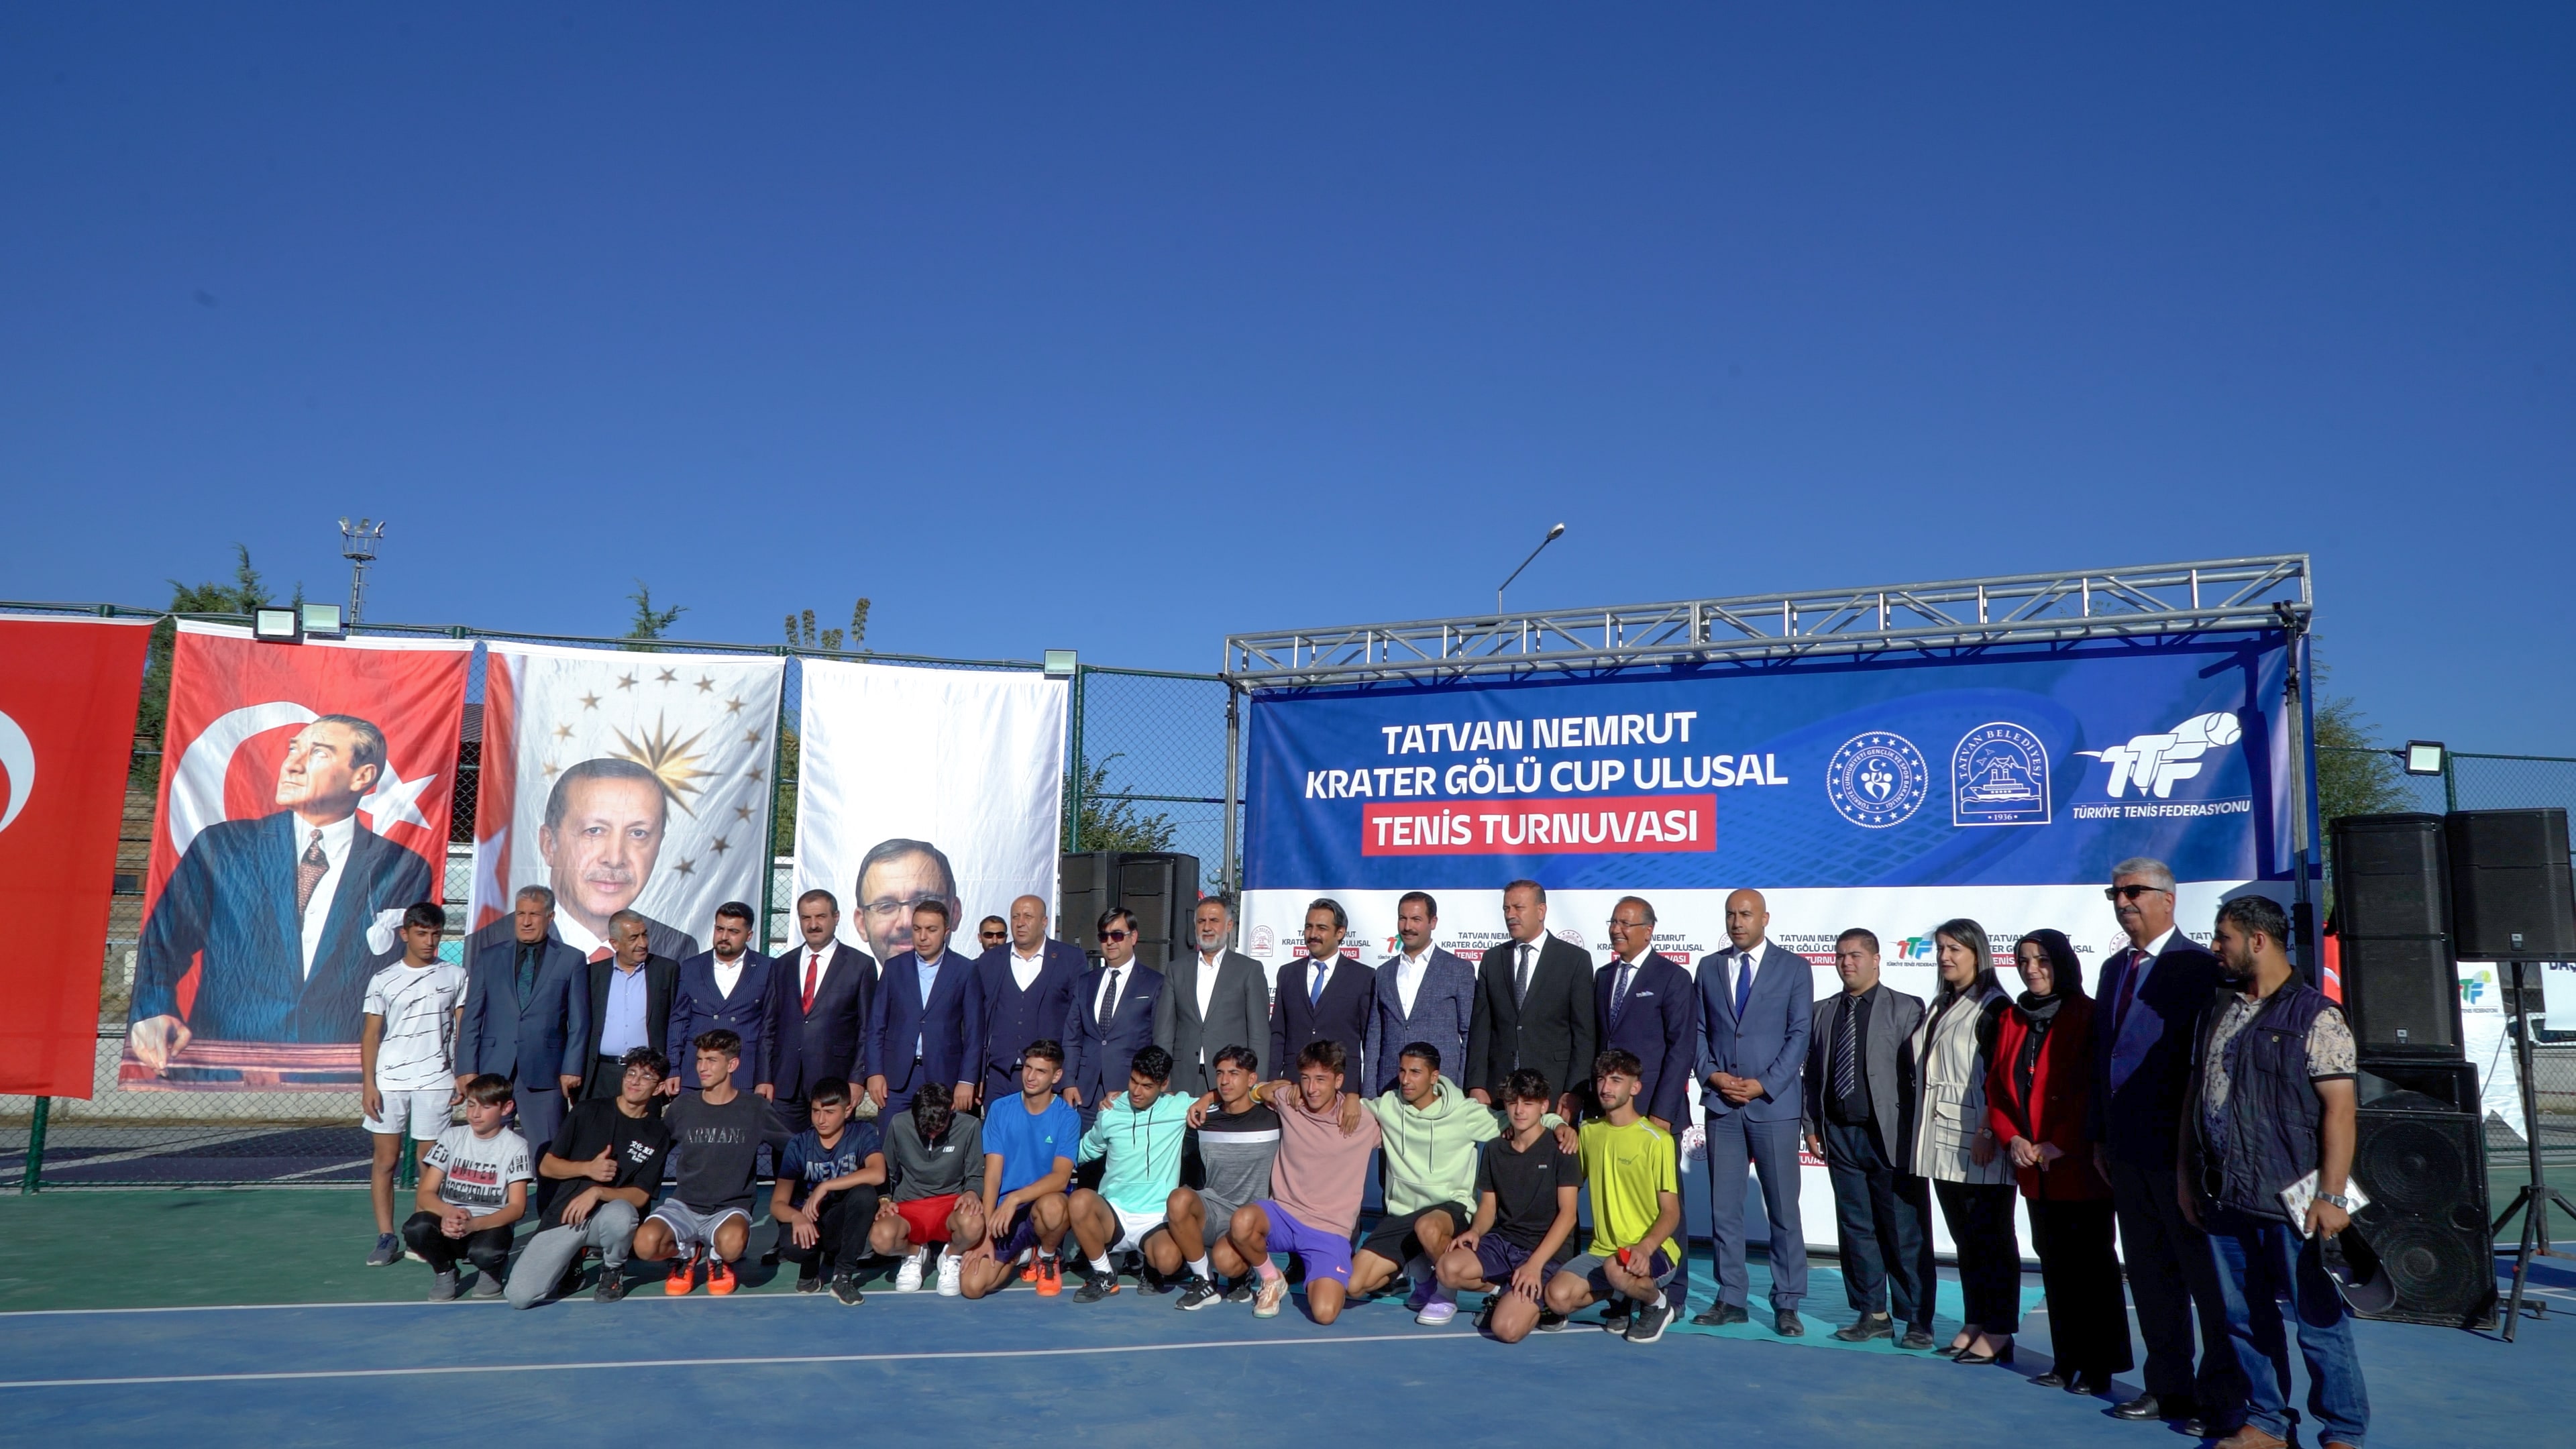 Tatvan Nemrut Krater Gölü Cup Ulusal Tenis Turnuvası Başladı